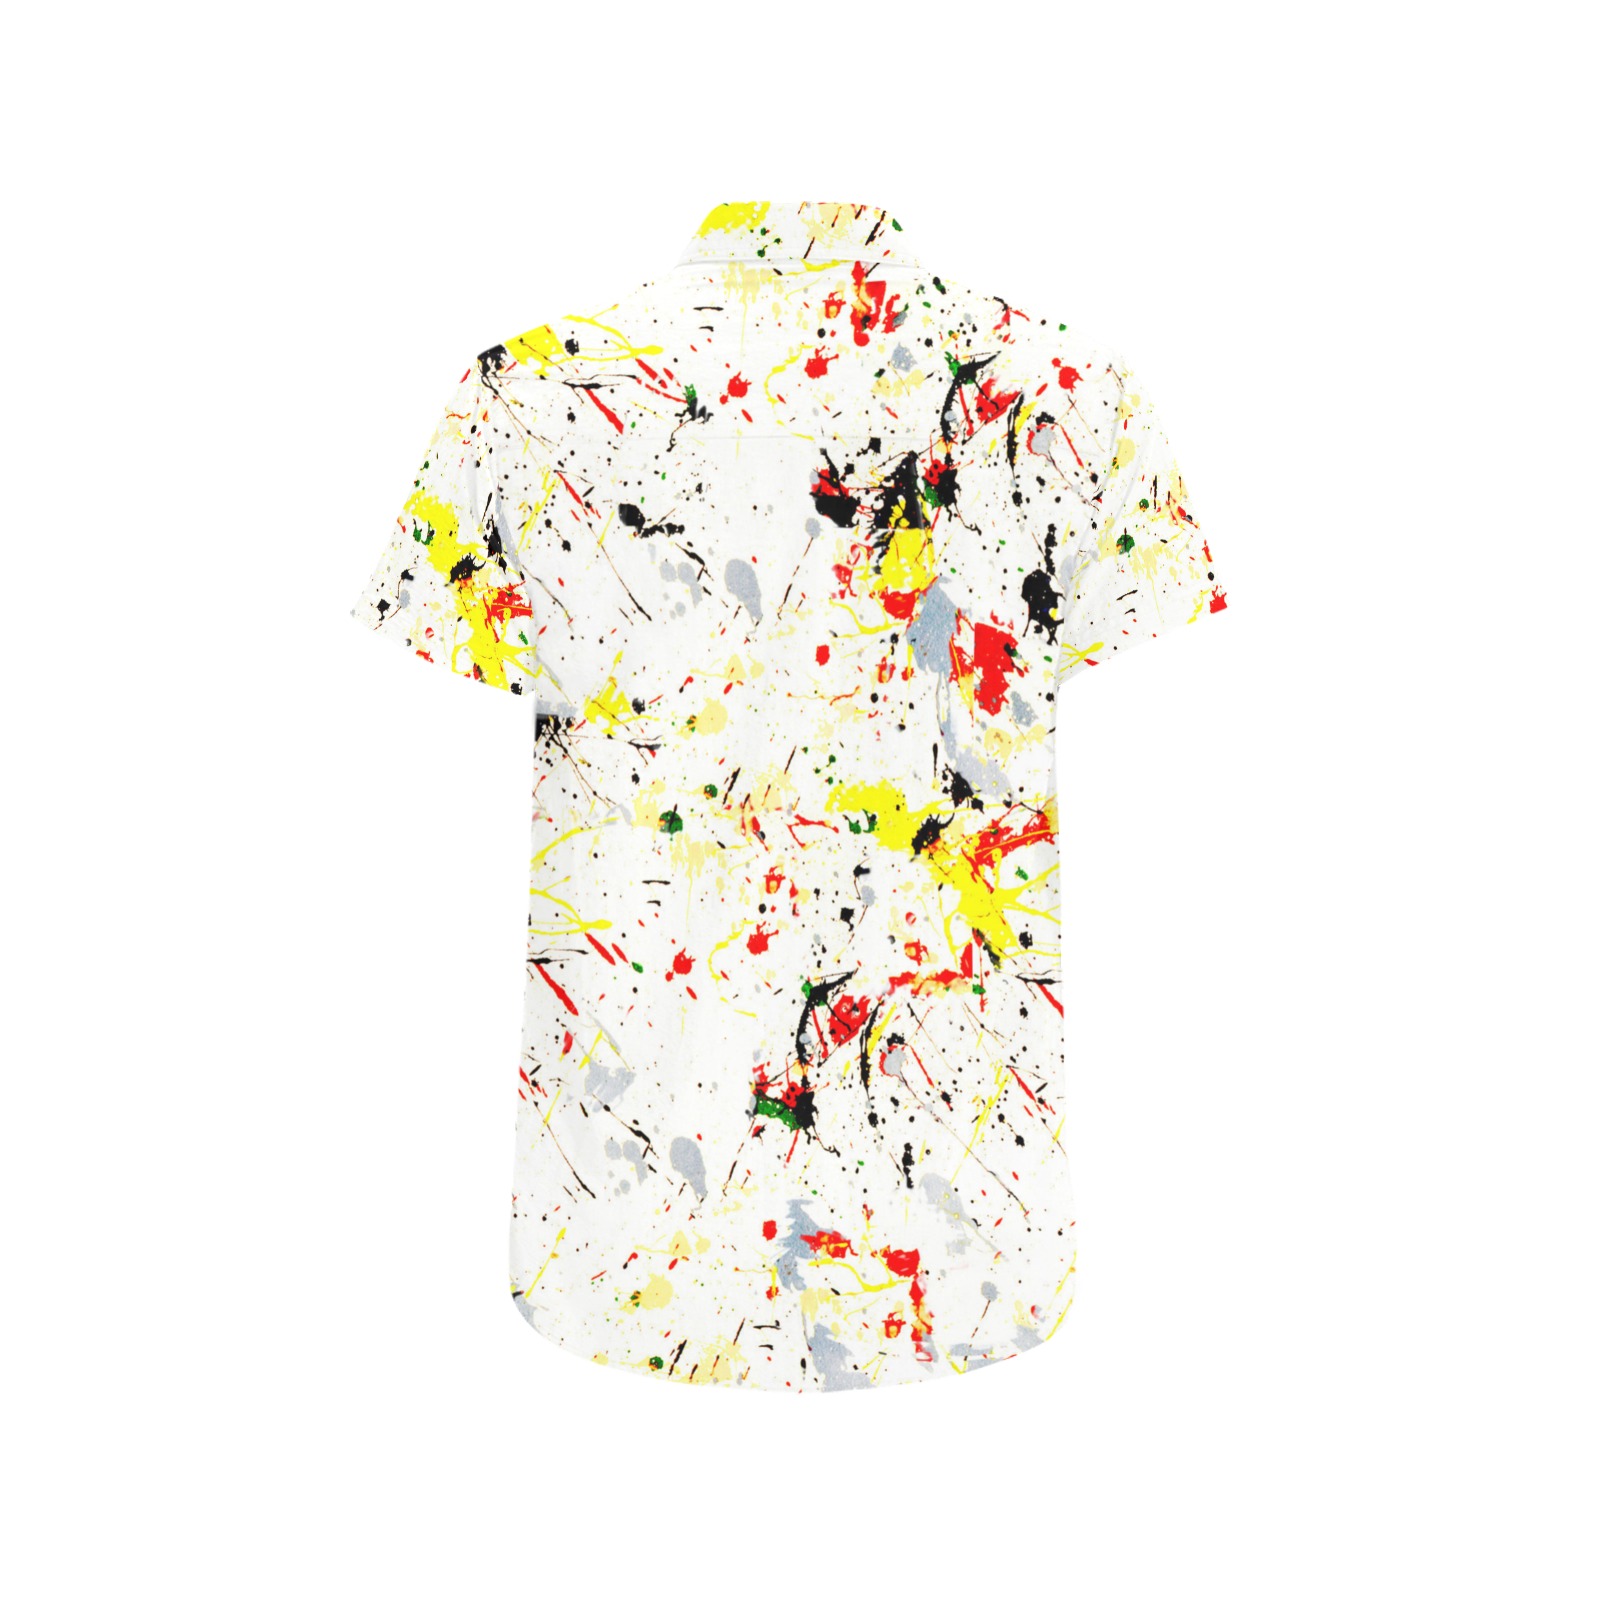 Yellow, Red, Black Paint Splatter Men's All Over Print Short Sleeve Shirt (Model T53)